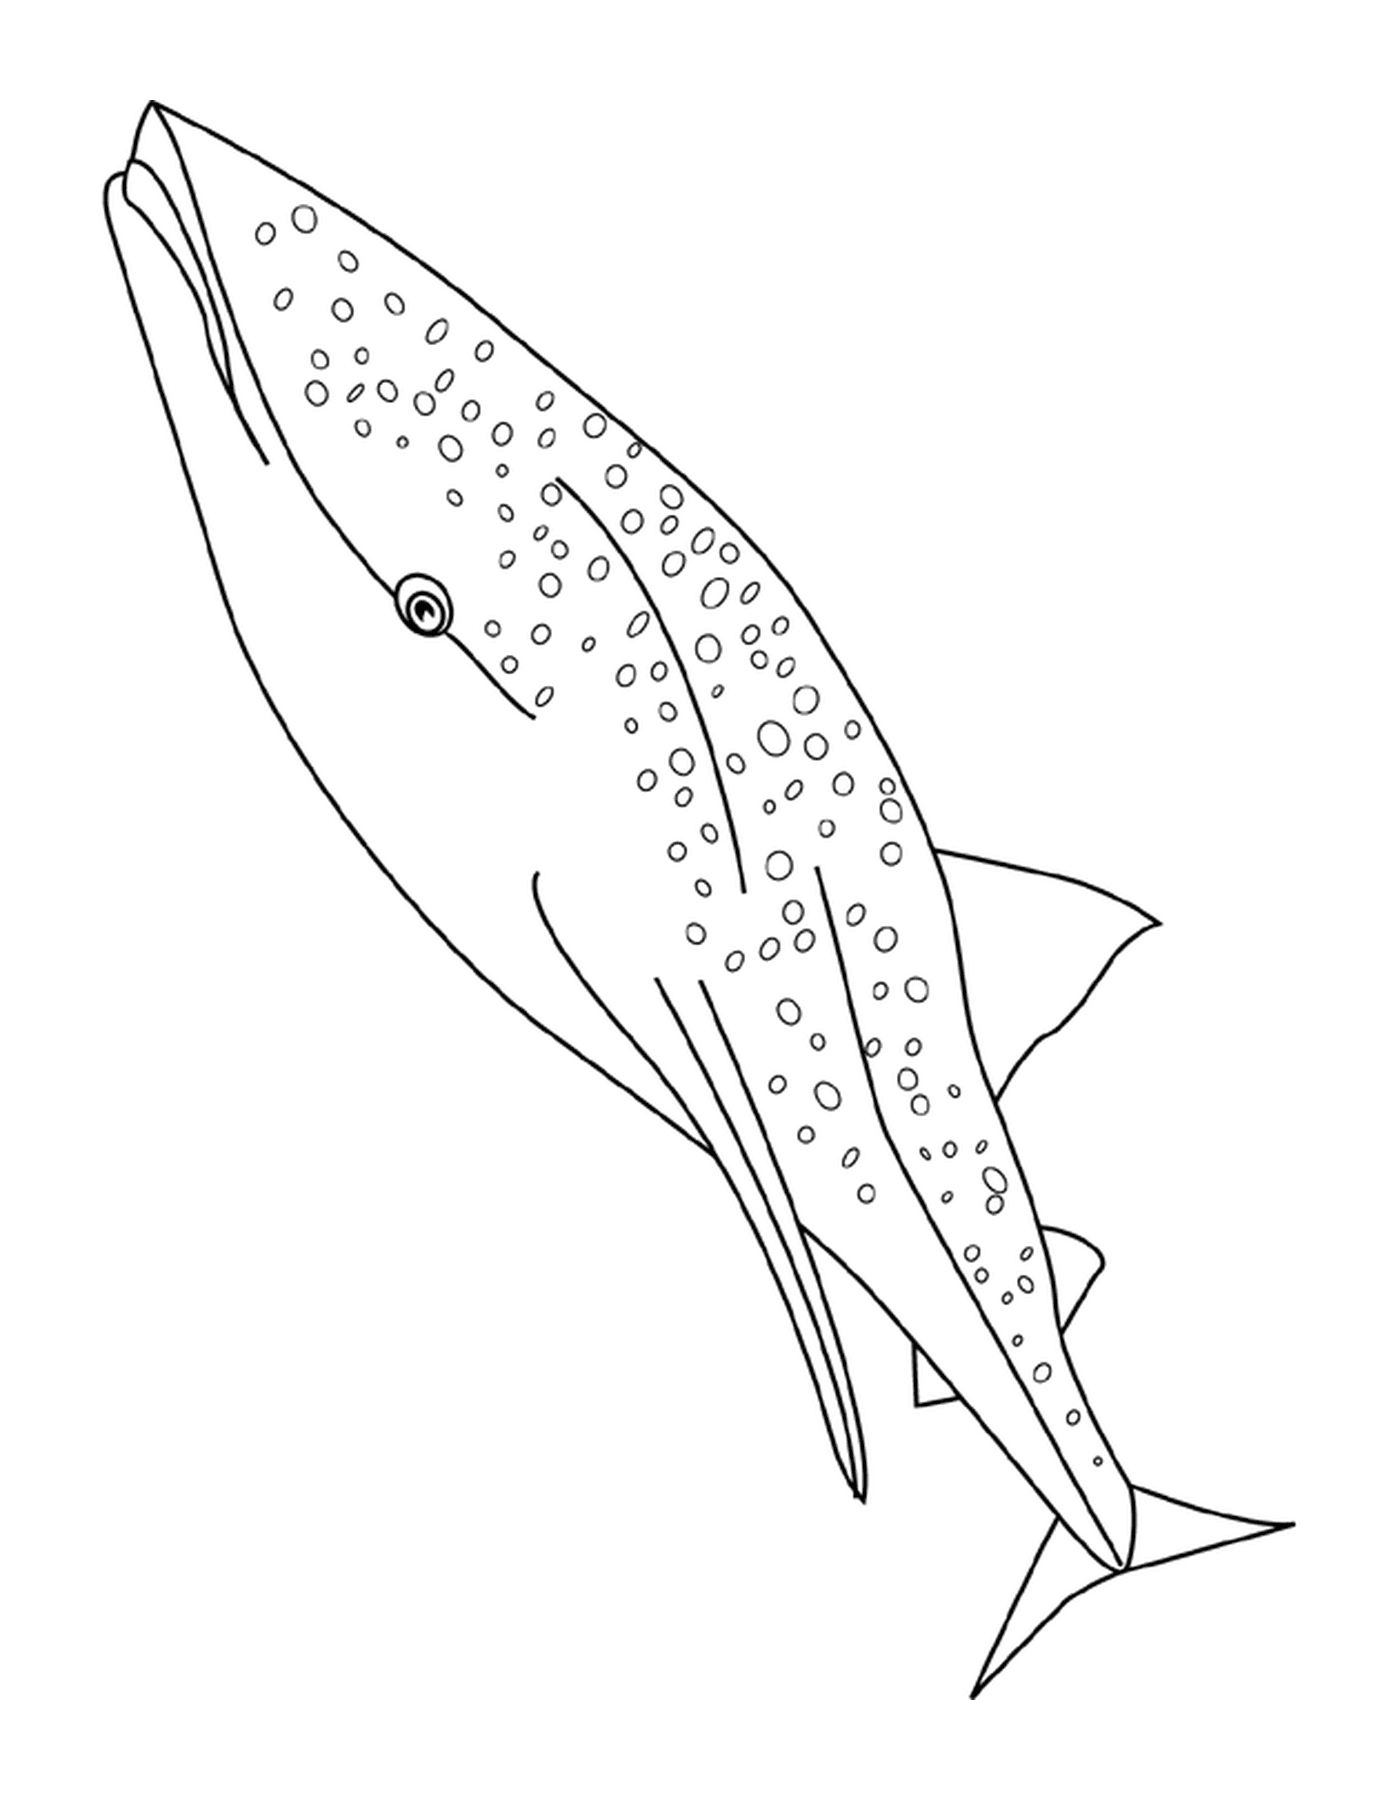  Ballena de tiburón 